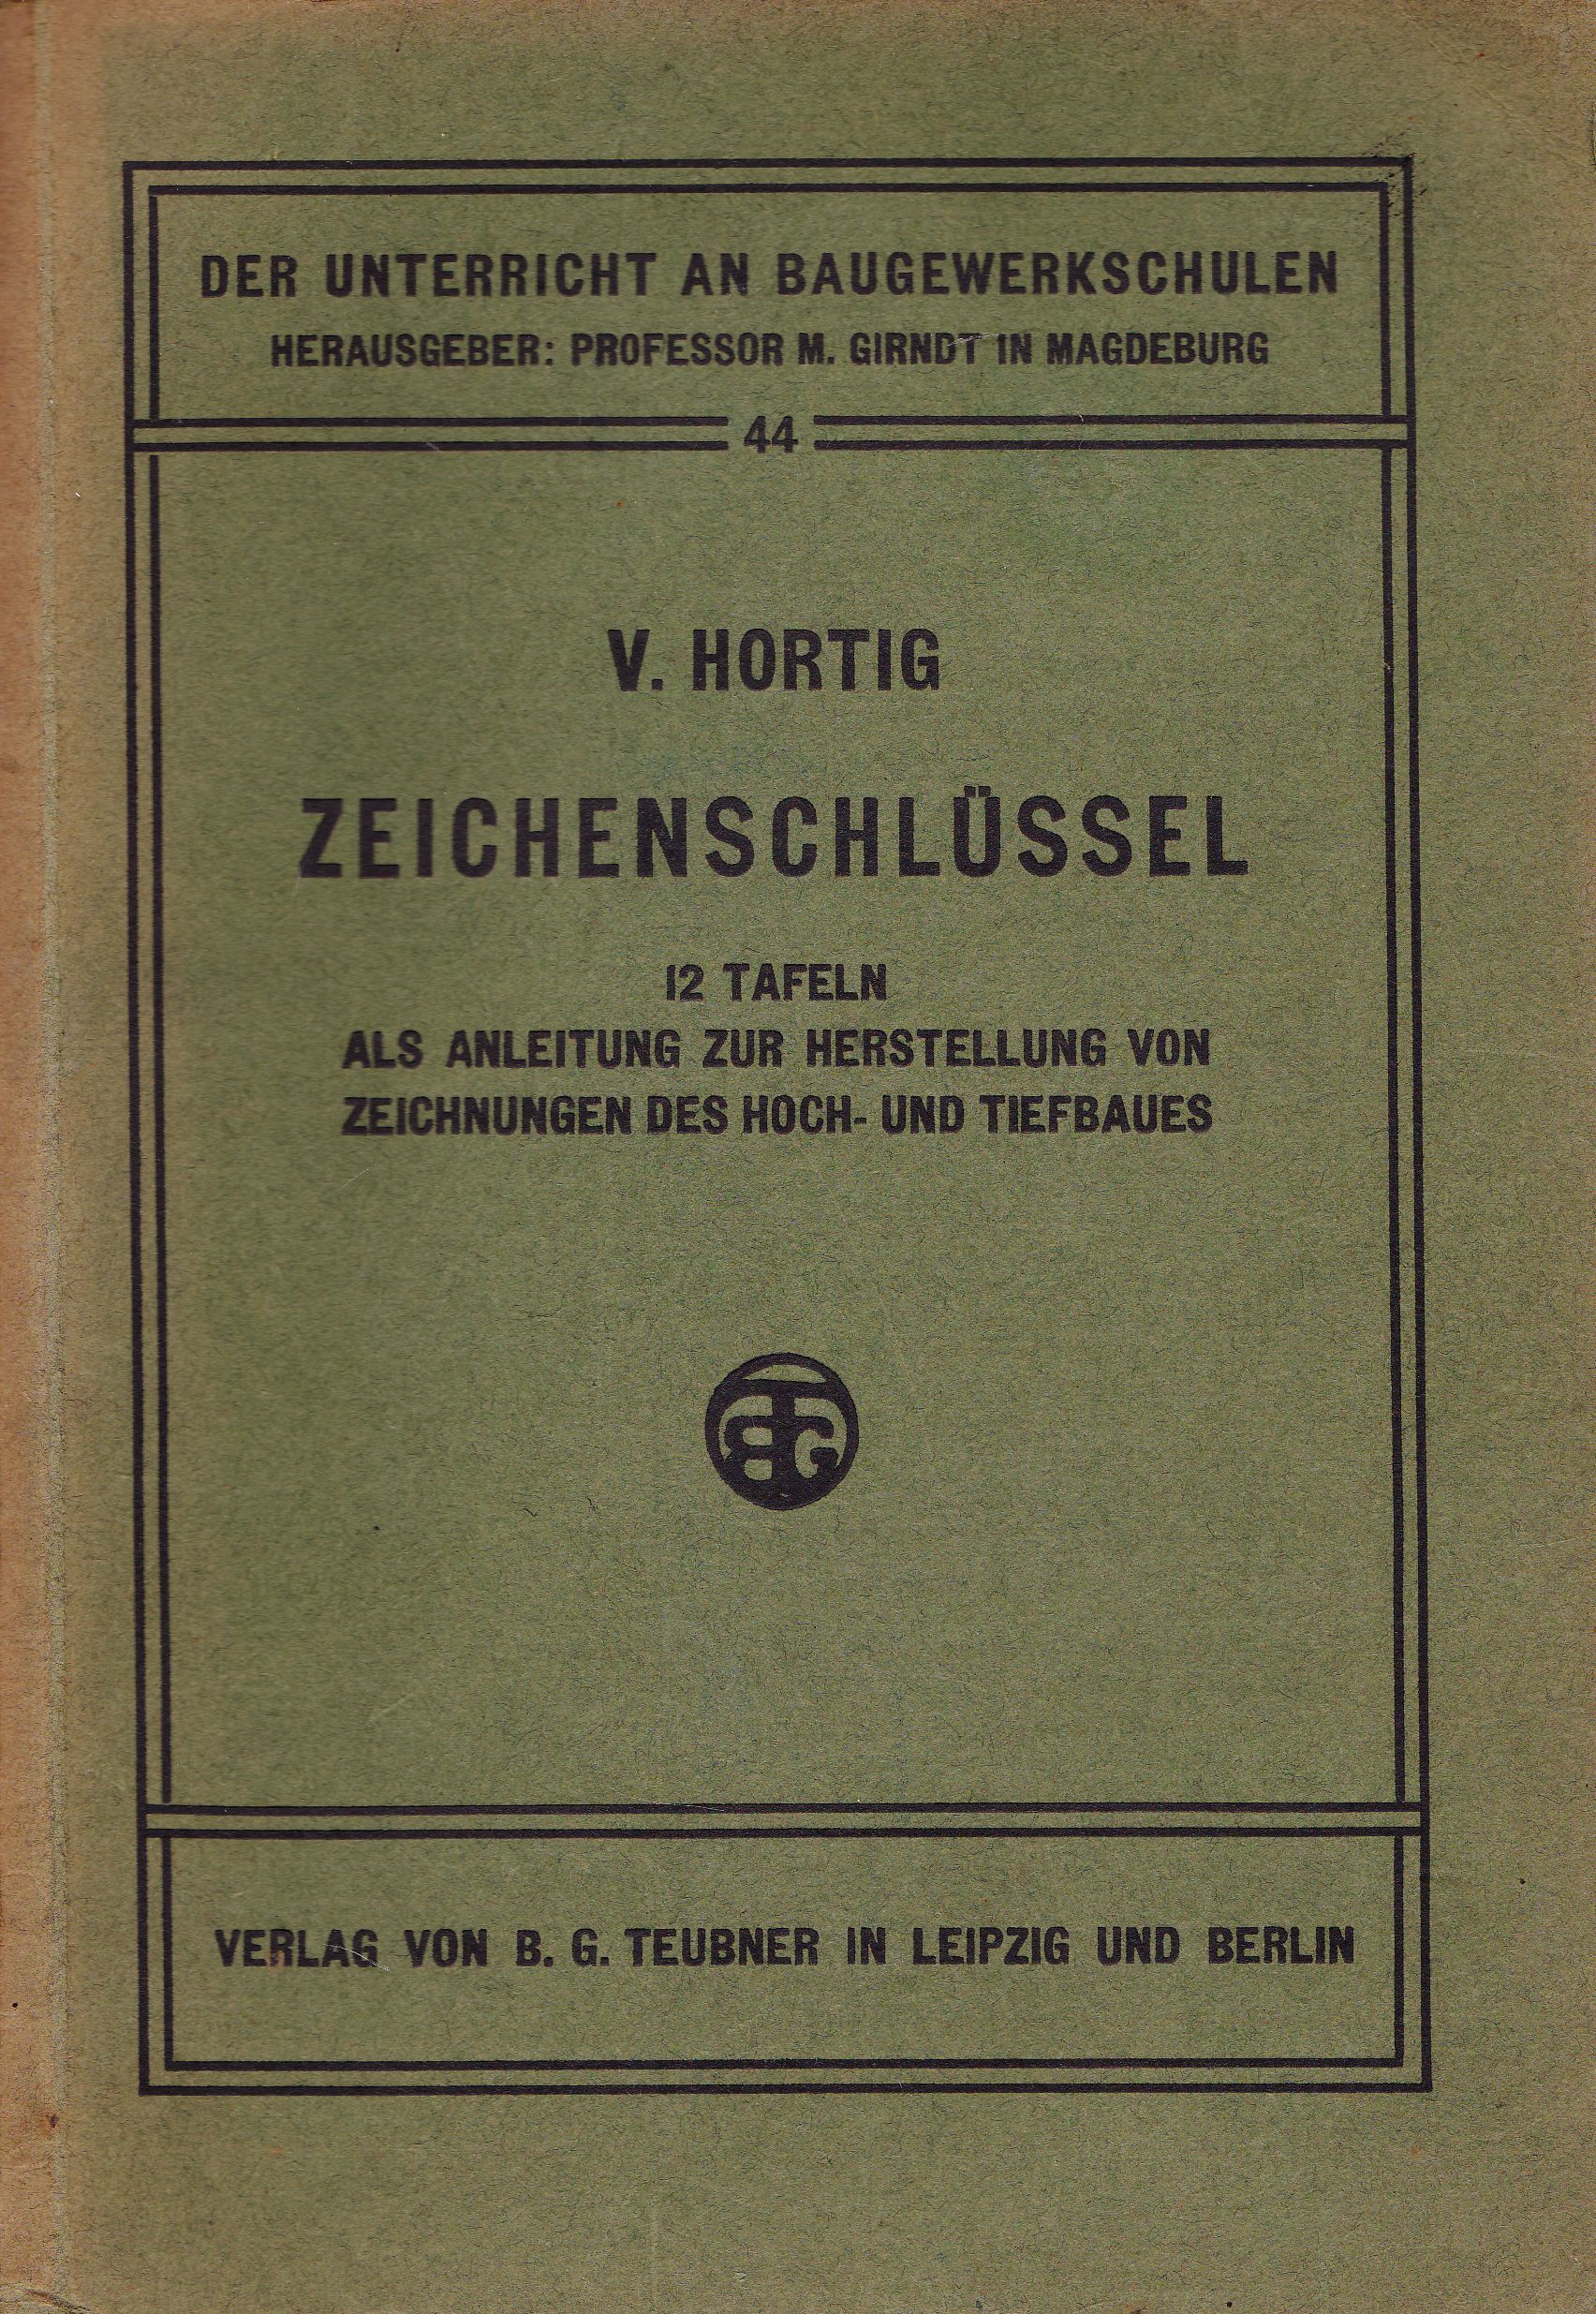 Hortig, V.  Zeichenschlüssel. 12 Tafeln als Anleitung zur Herstellung von Zeichnungen des Hoch- und Tiefbaues. 